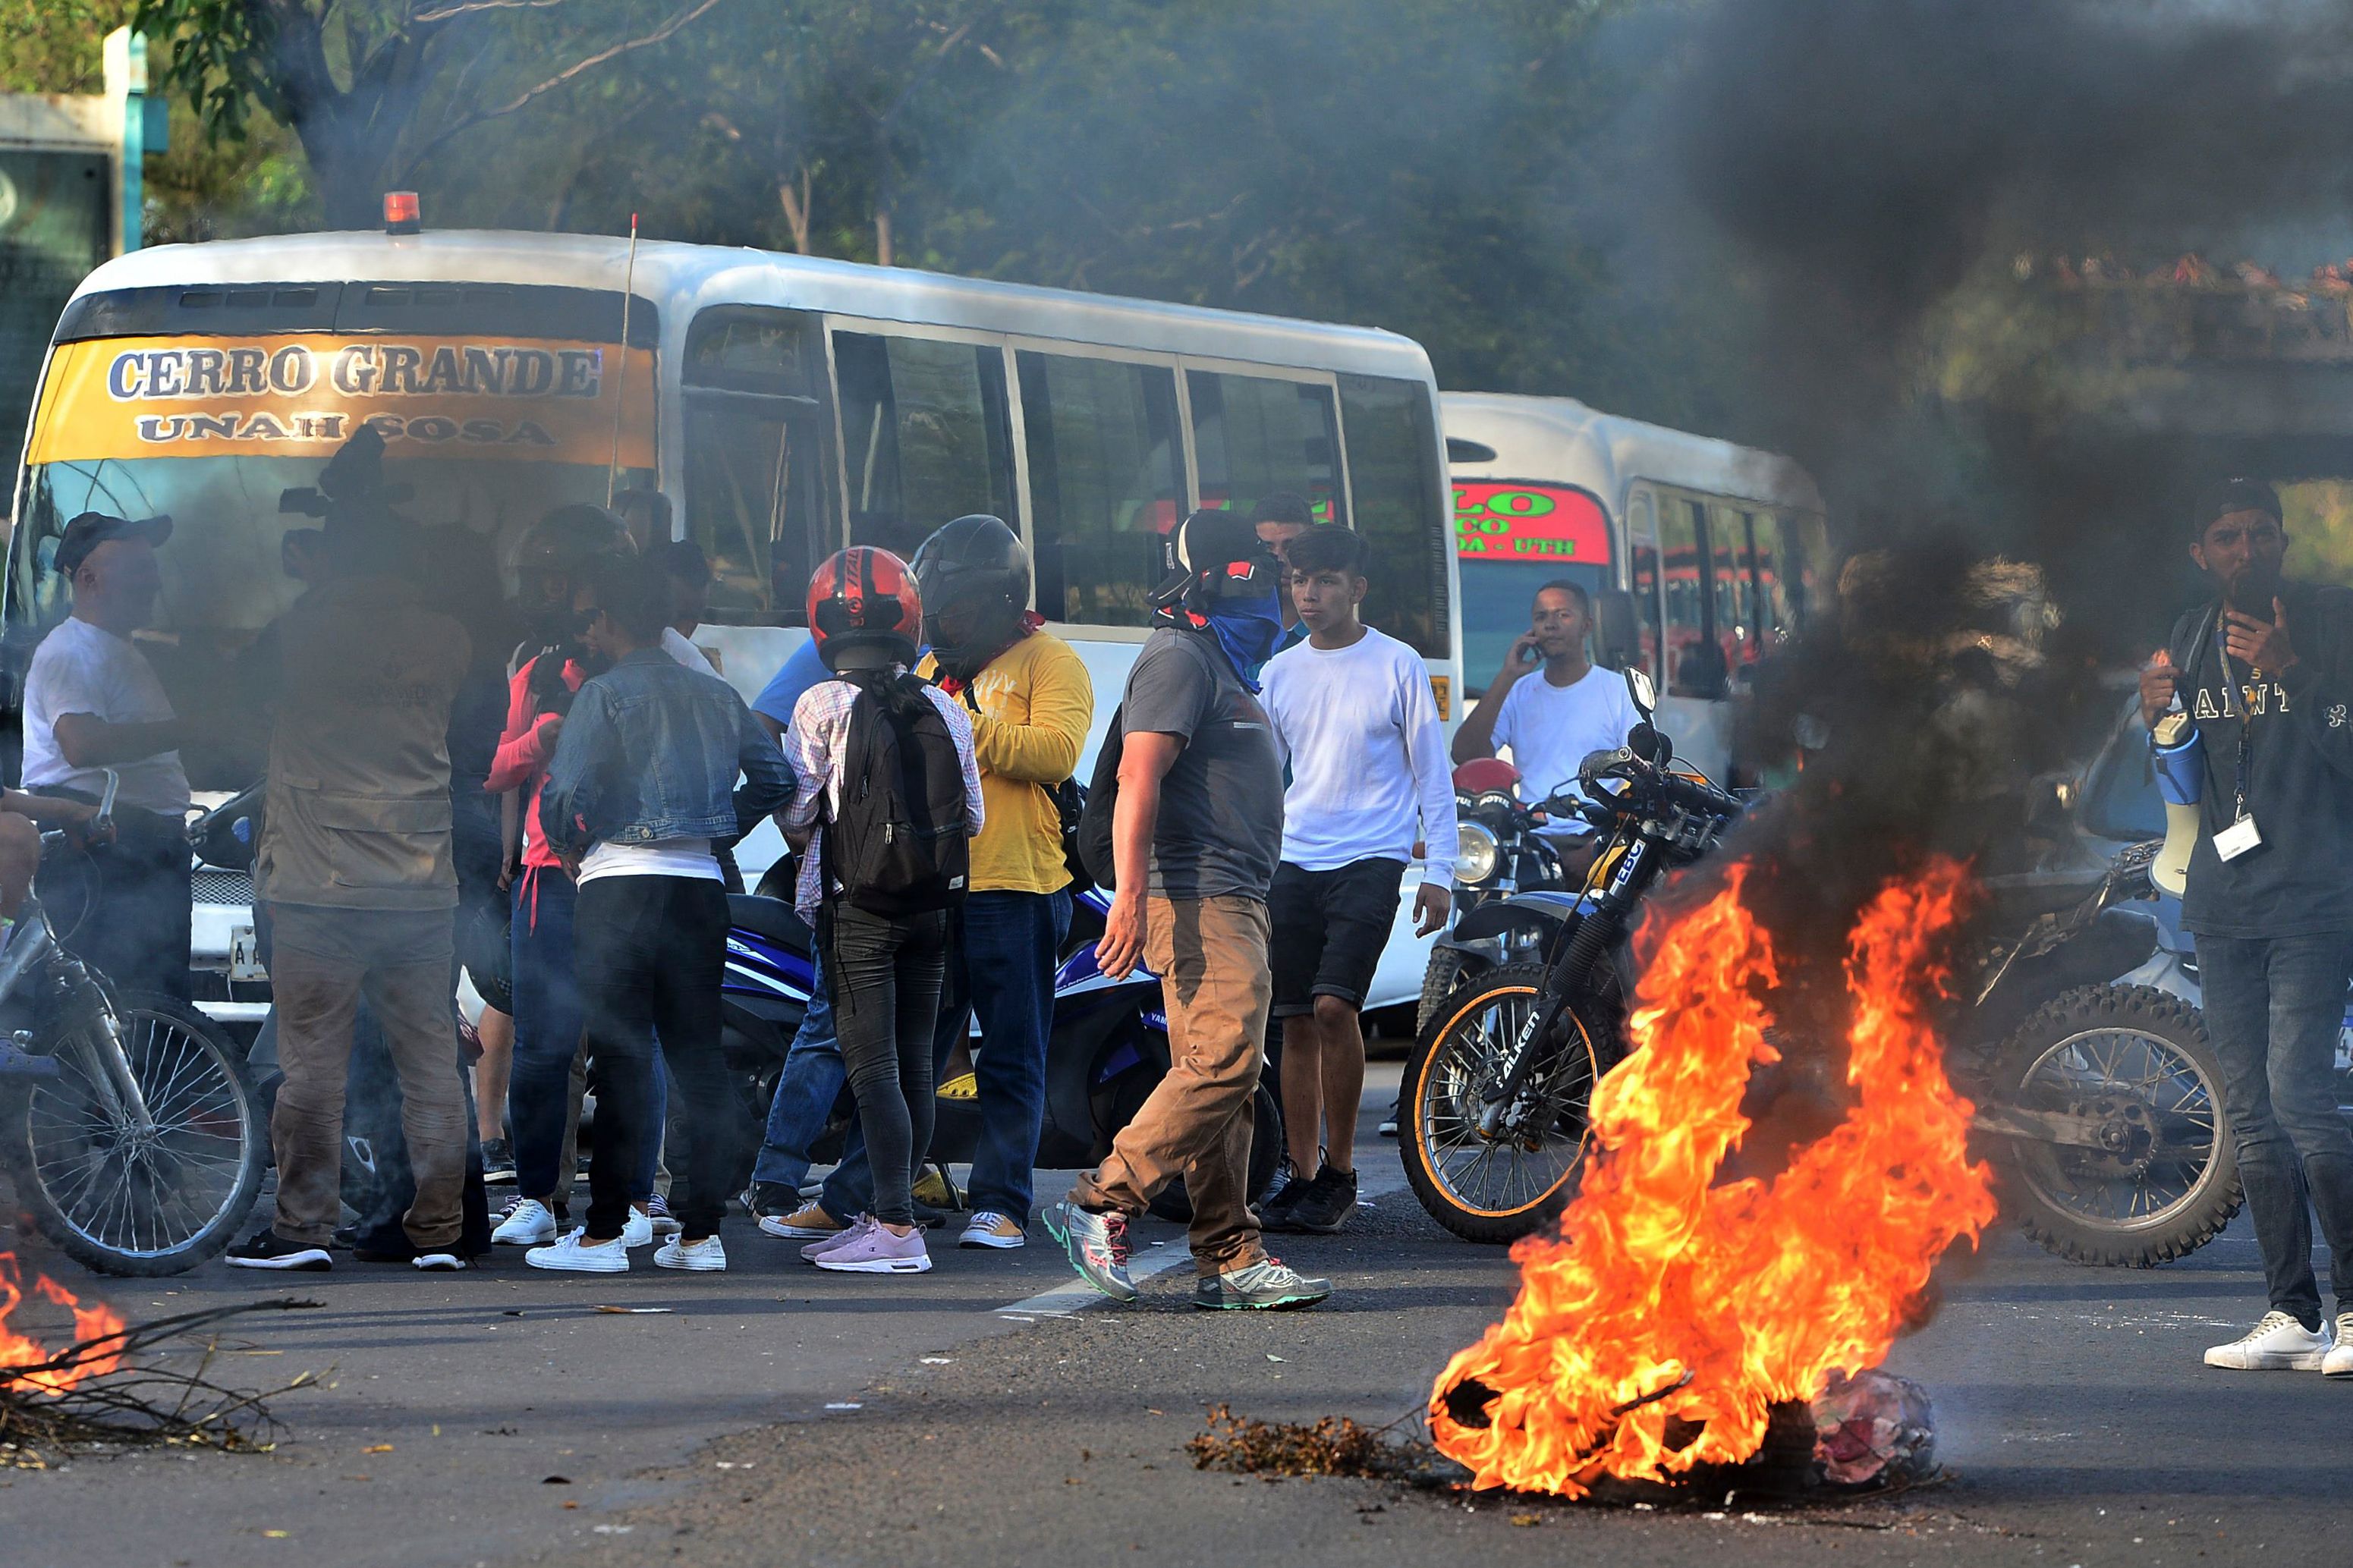 Estudiantes de la Universidad Autónoma de Honduras también protestan en Tegucigalpa contra el gobierno de Juan Orlando Hernández. (Foto Prensa Libre: AFP)